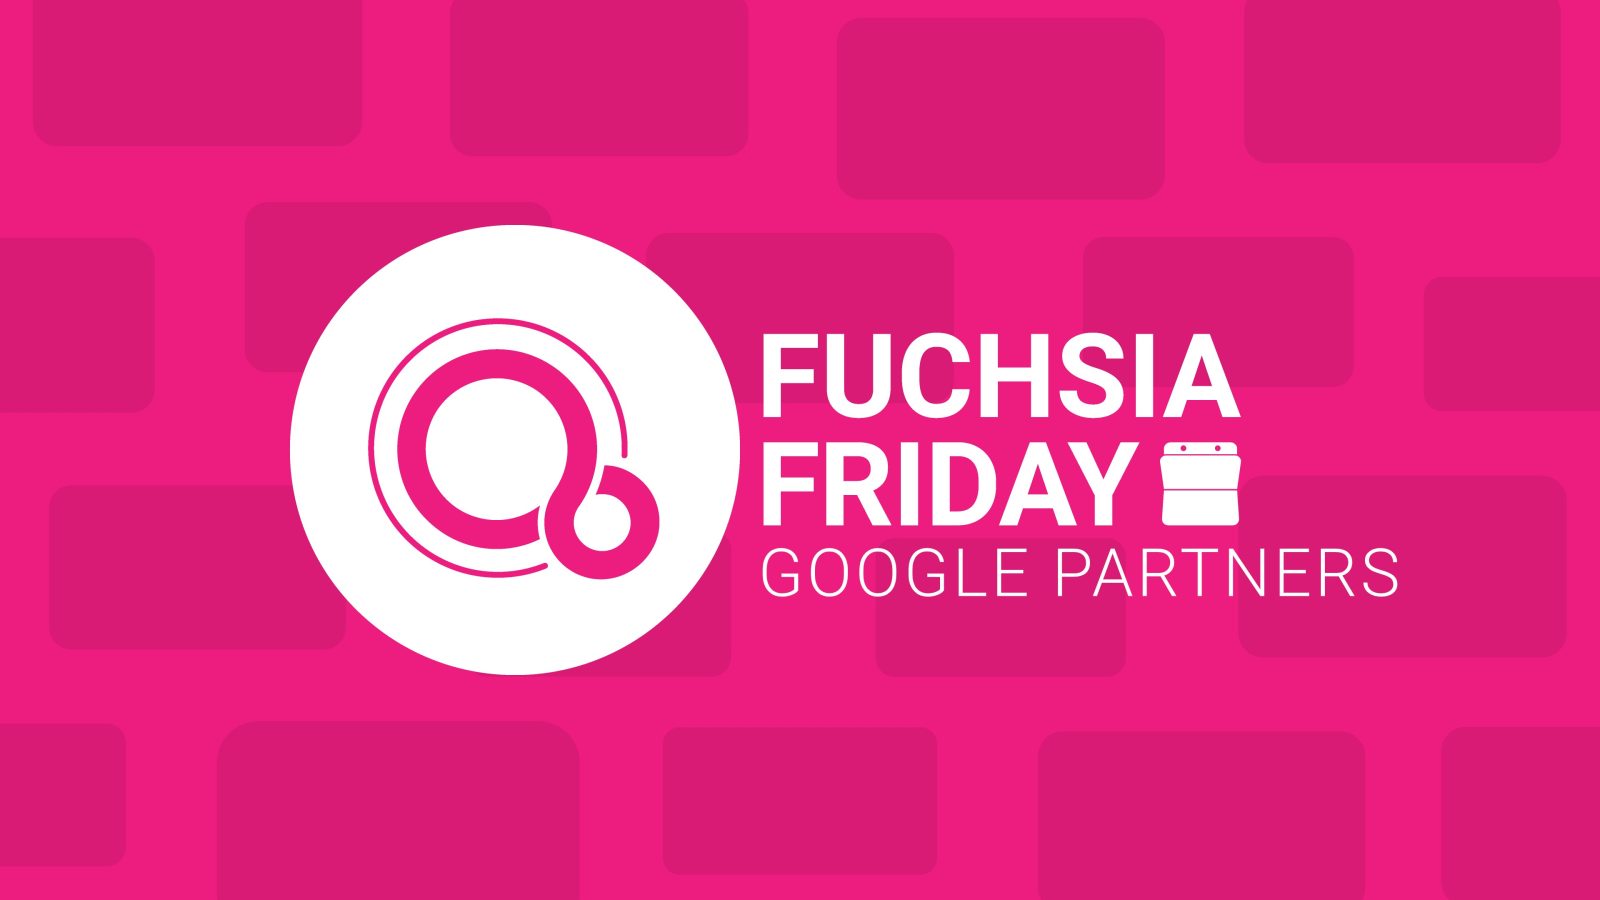 Fuchsia Friday Google Partners